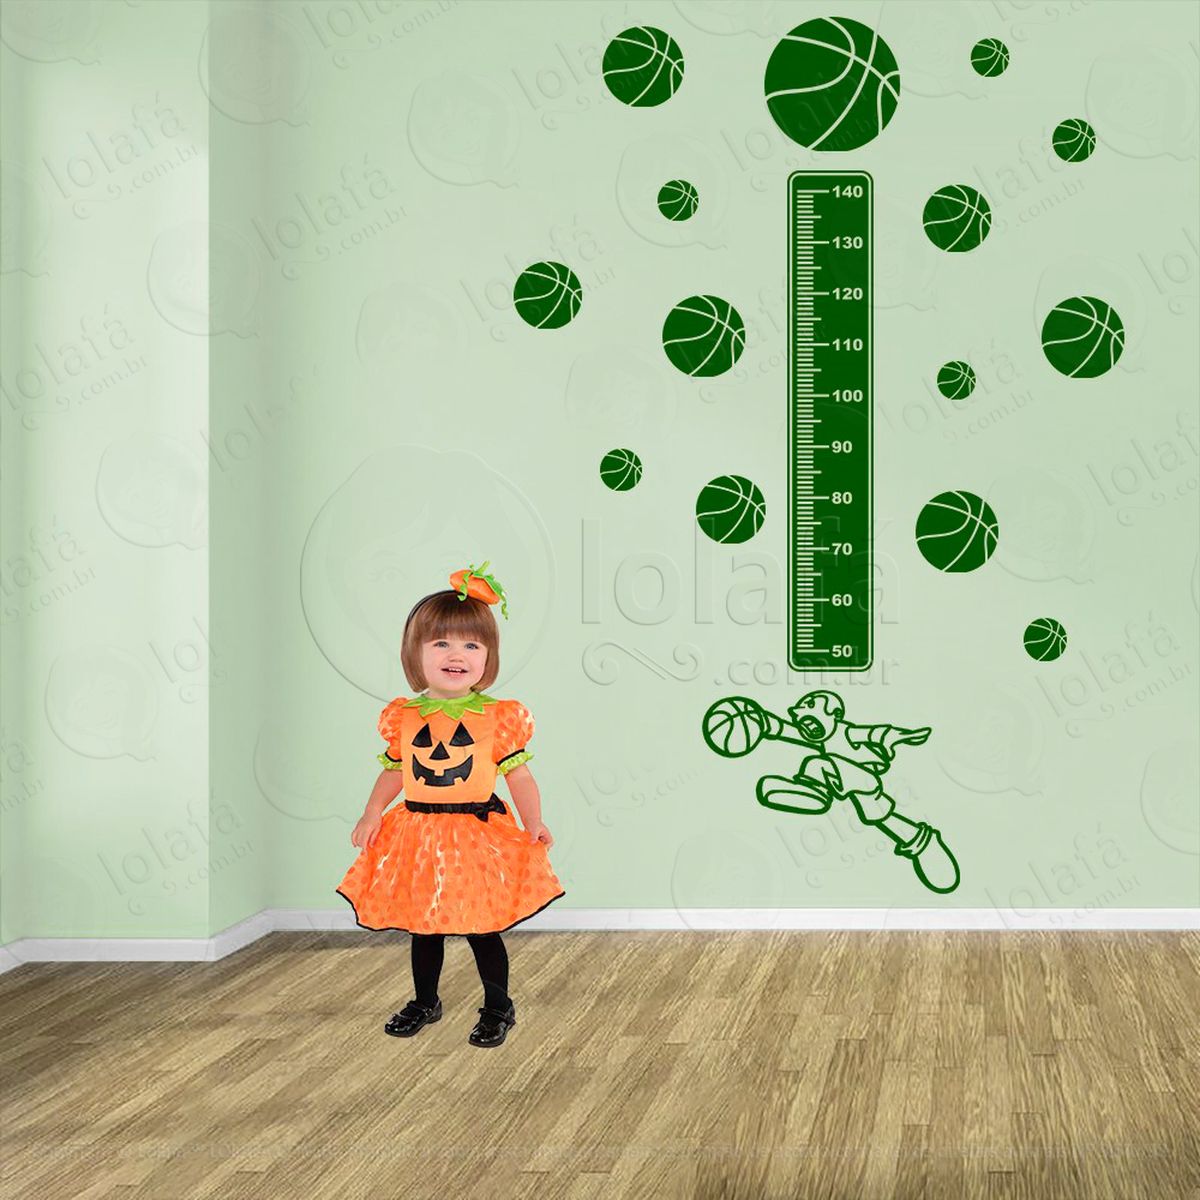 basquetebol e bolas de basquete adesivo régua de crescimento infantil, medidor de altura para quarto, porta e parede - mod:266